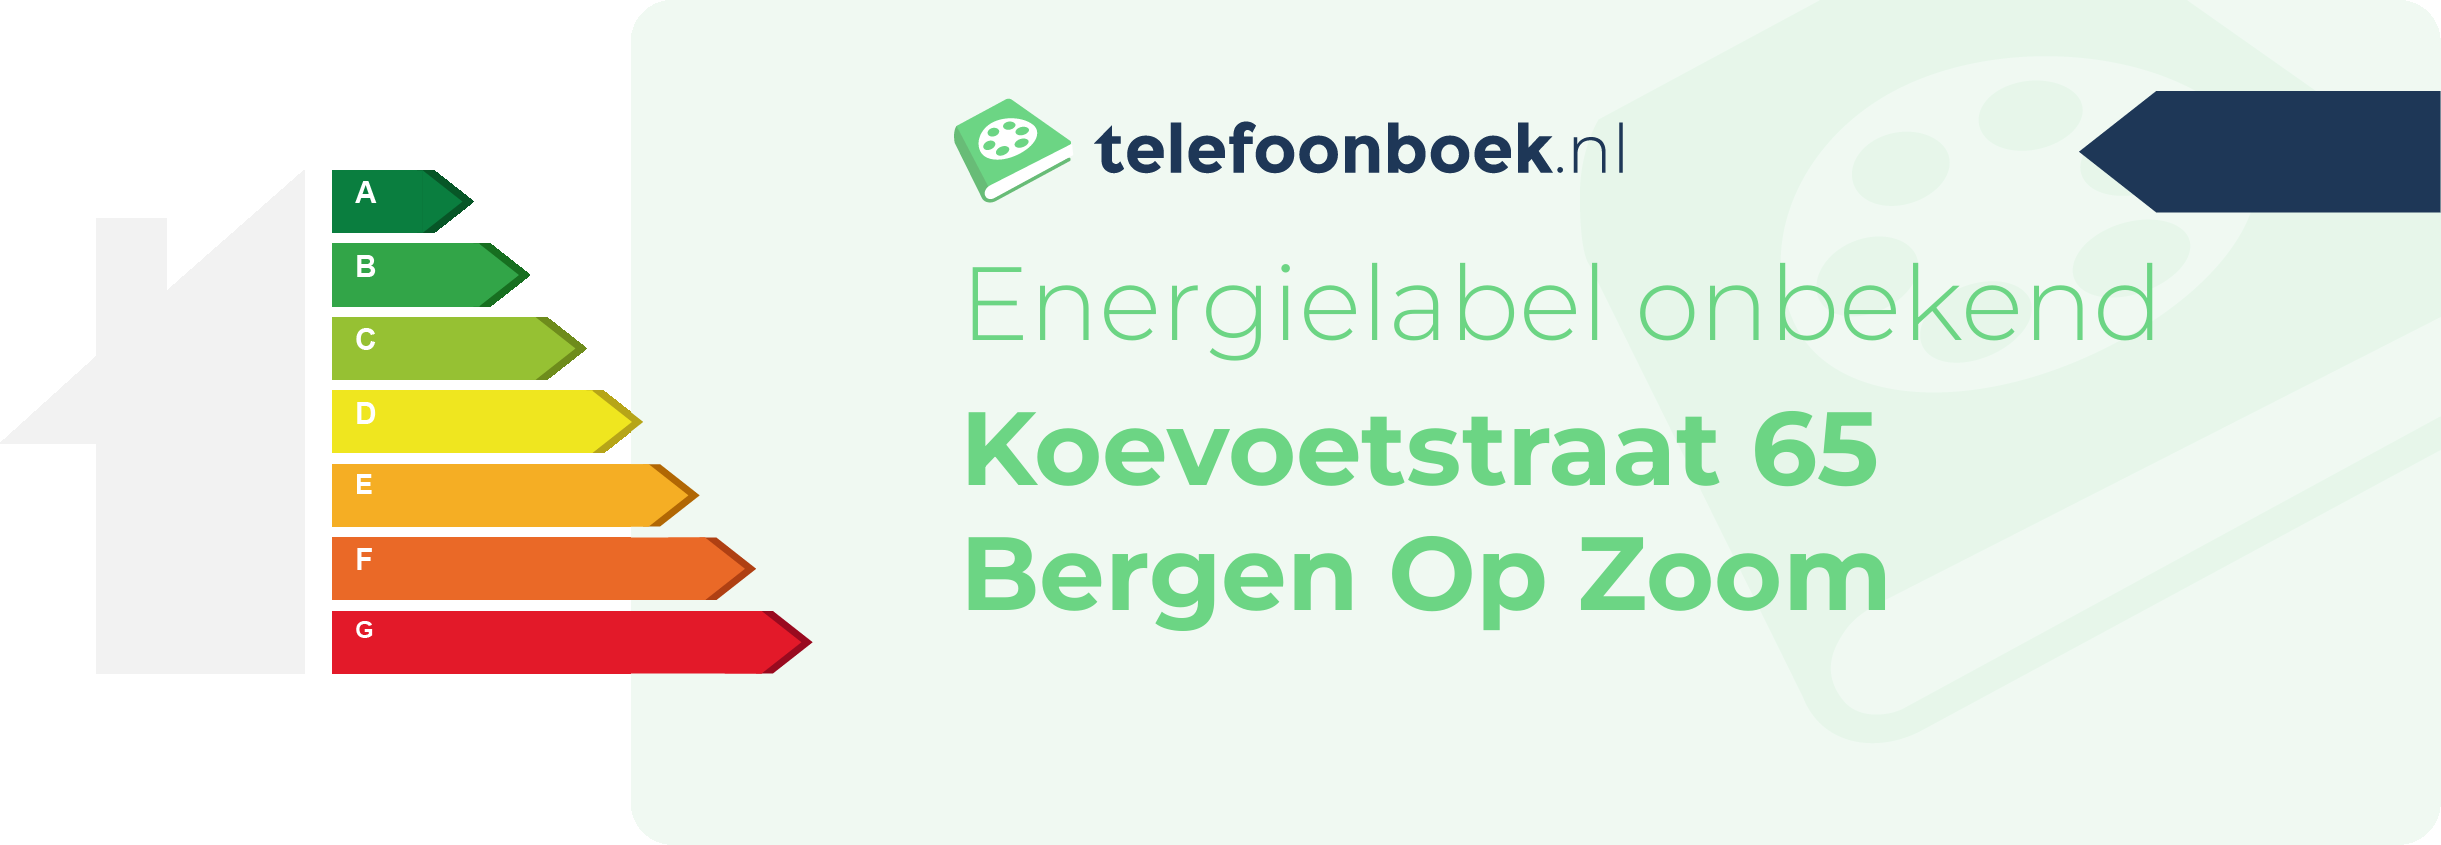 Energielabel Koevoetstraat 65 Bergen Op Zoom